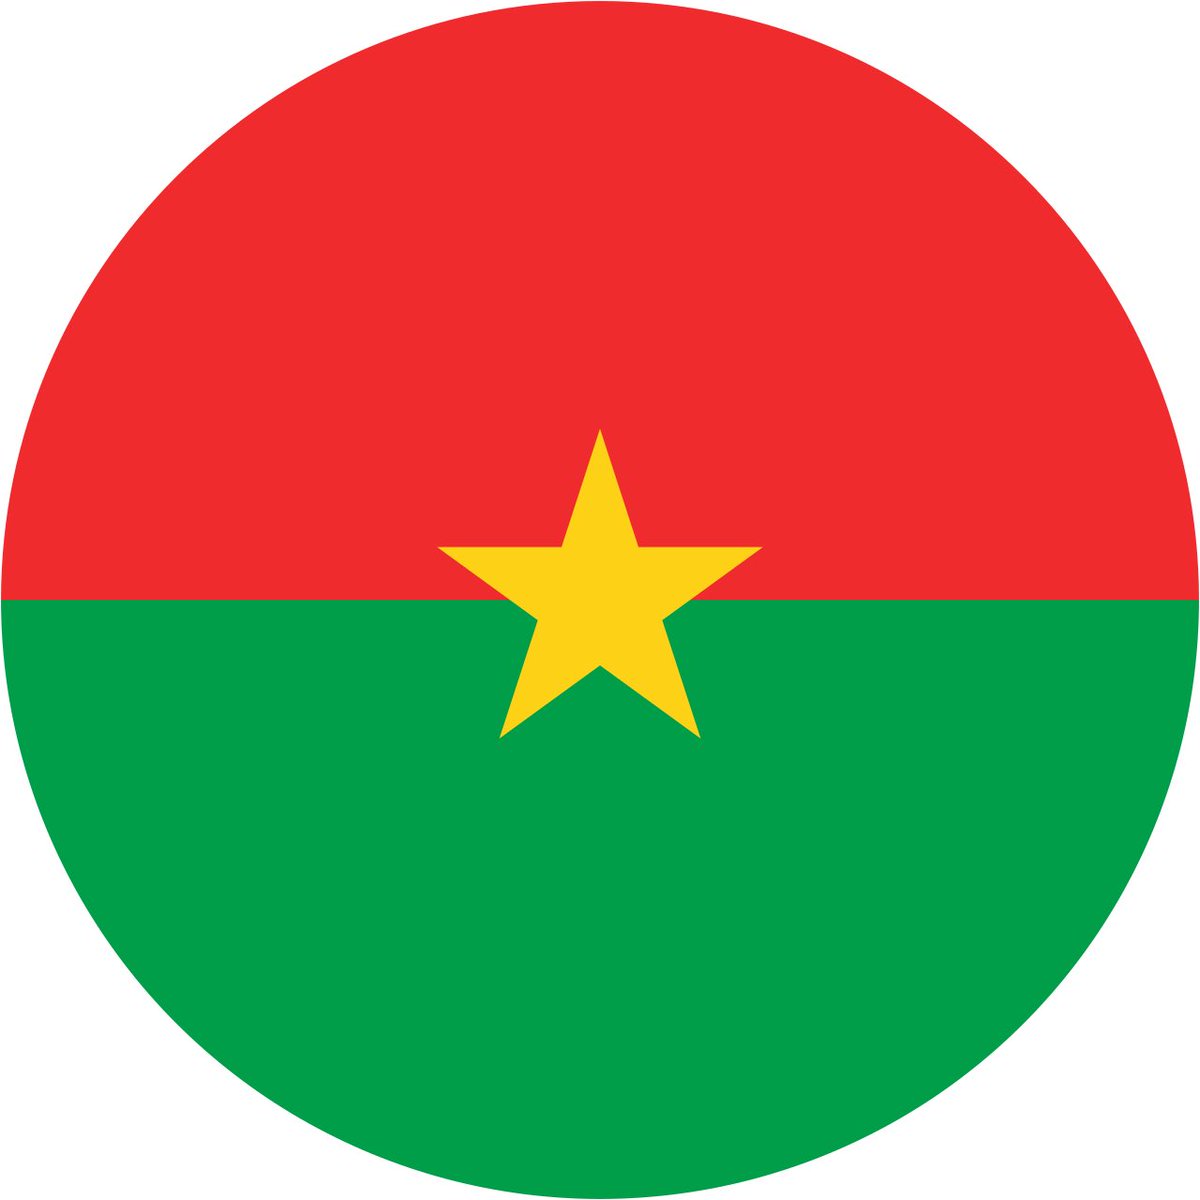 Burkina Faso: why star so small